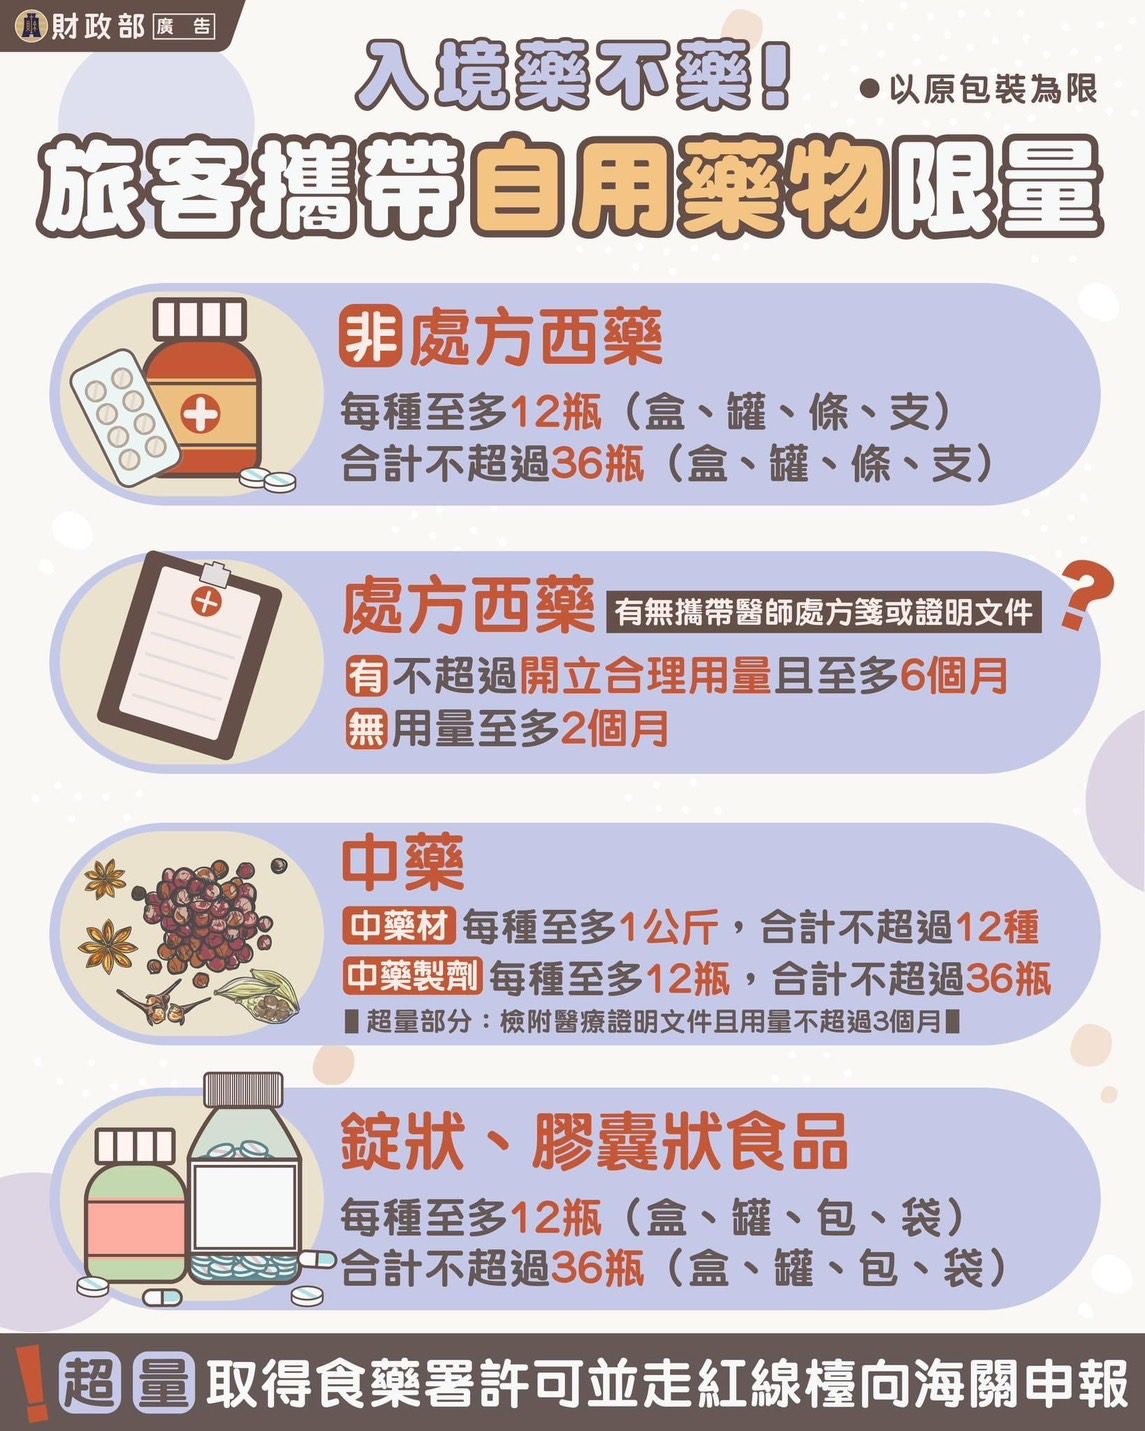 出國攜帶藥物返國要注意!　避免違規受罰 - 早安台灣新聞 | Morning Taiwan News